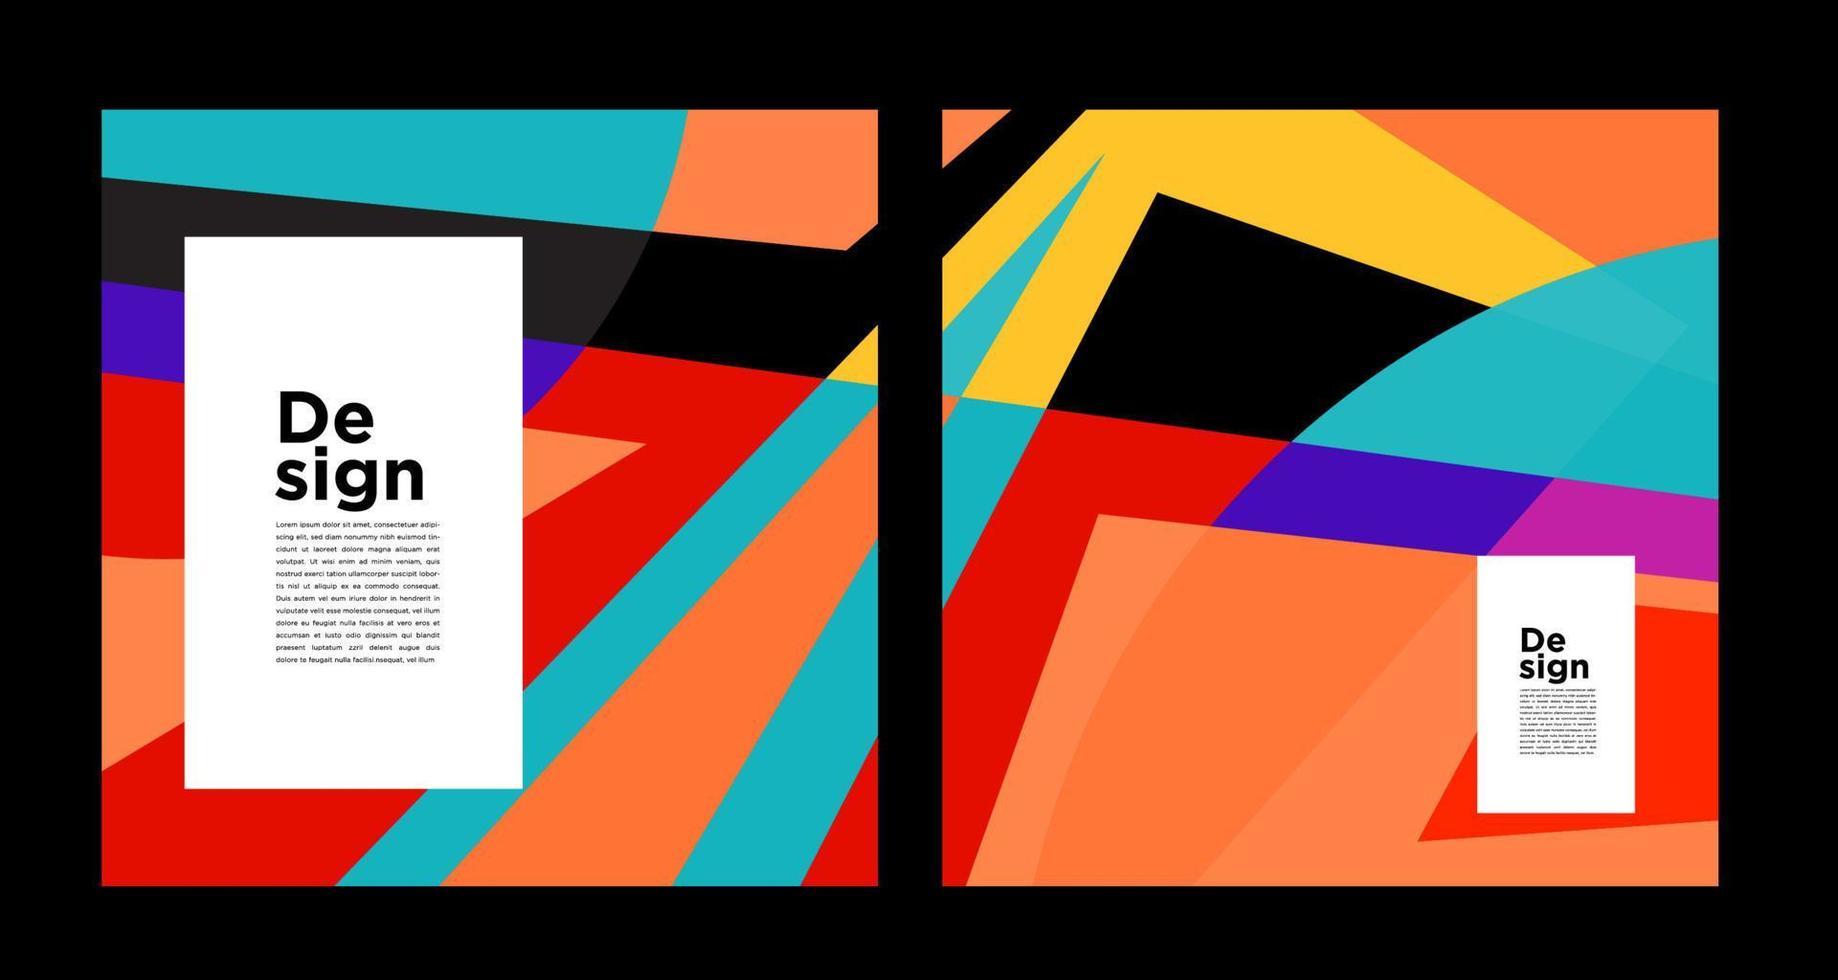 vecteur géométrique abstrait coloré et courbe pour le modèle de bannière de médias sociaux